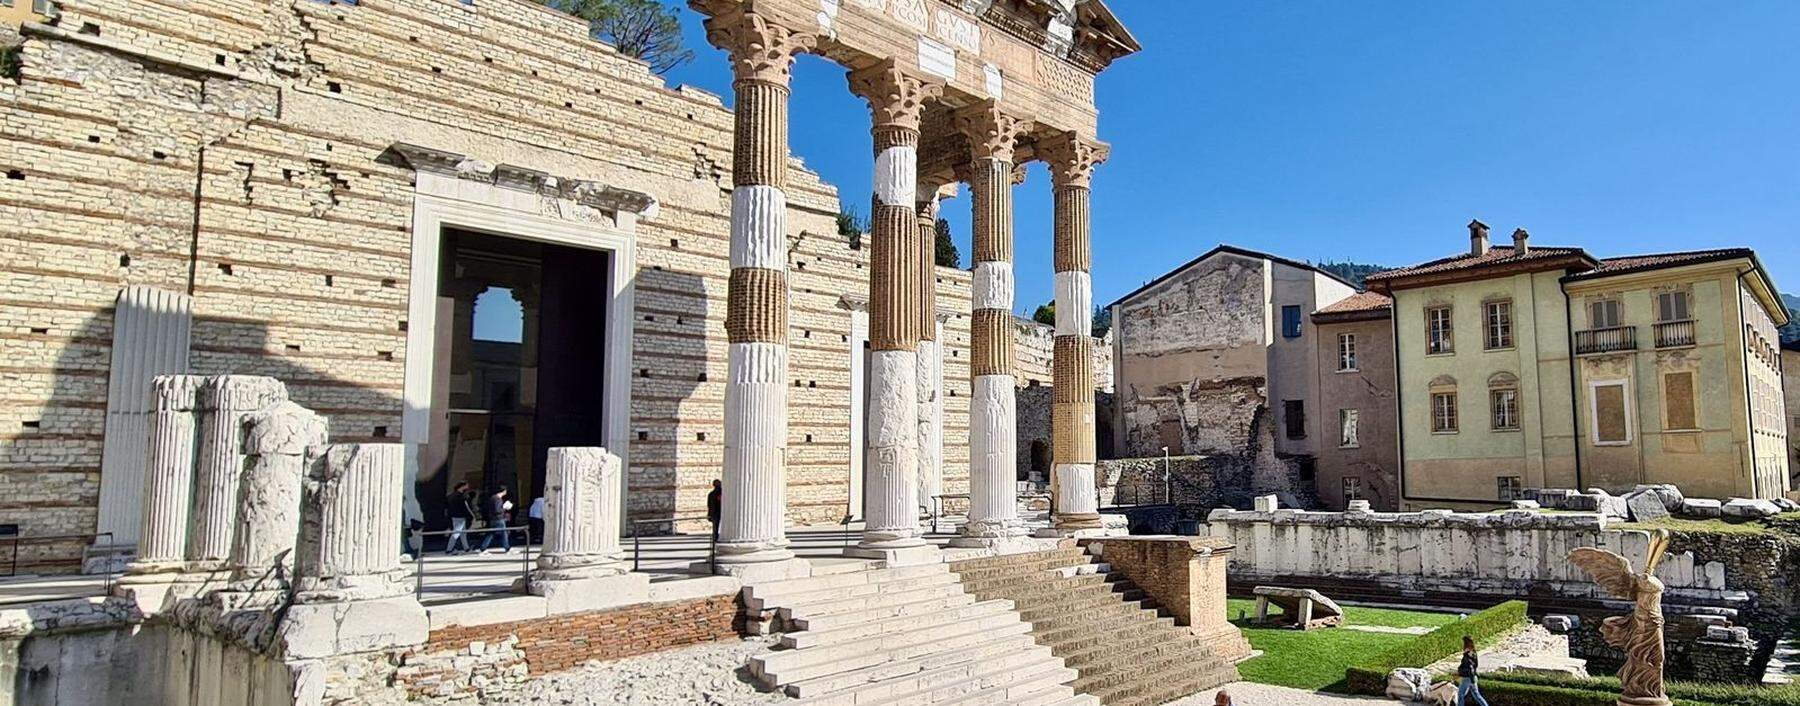 Brescia, gemeinsam mit Bergamo 2023 Kulturhauptstadt Italiens: Reich an Schätzen, etwa im archäologischen Areal.